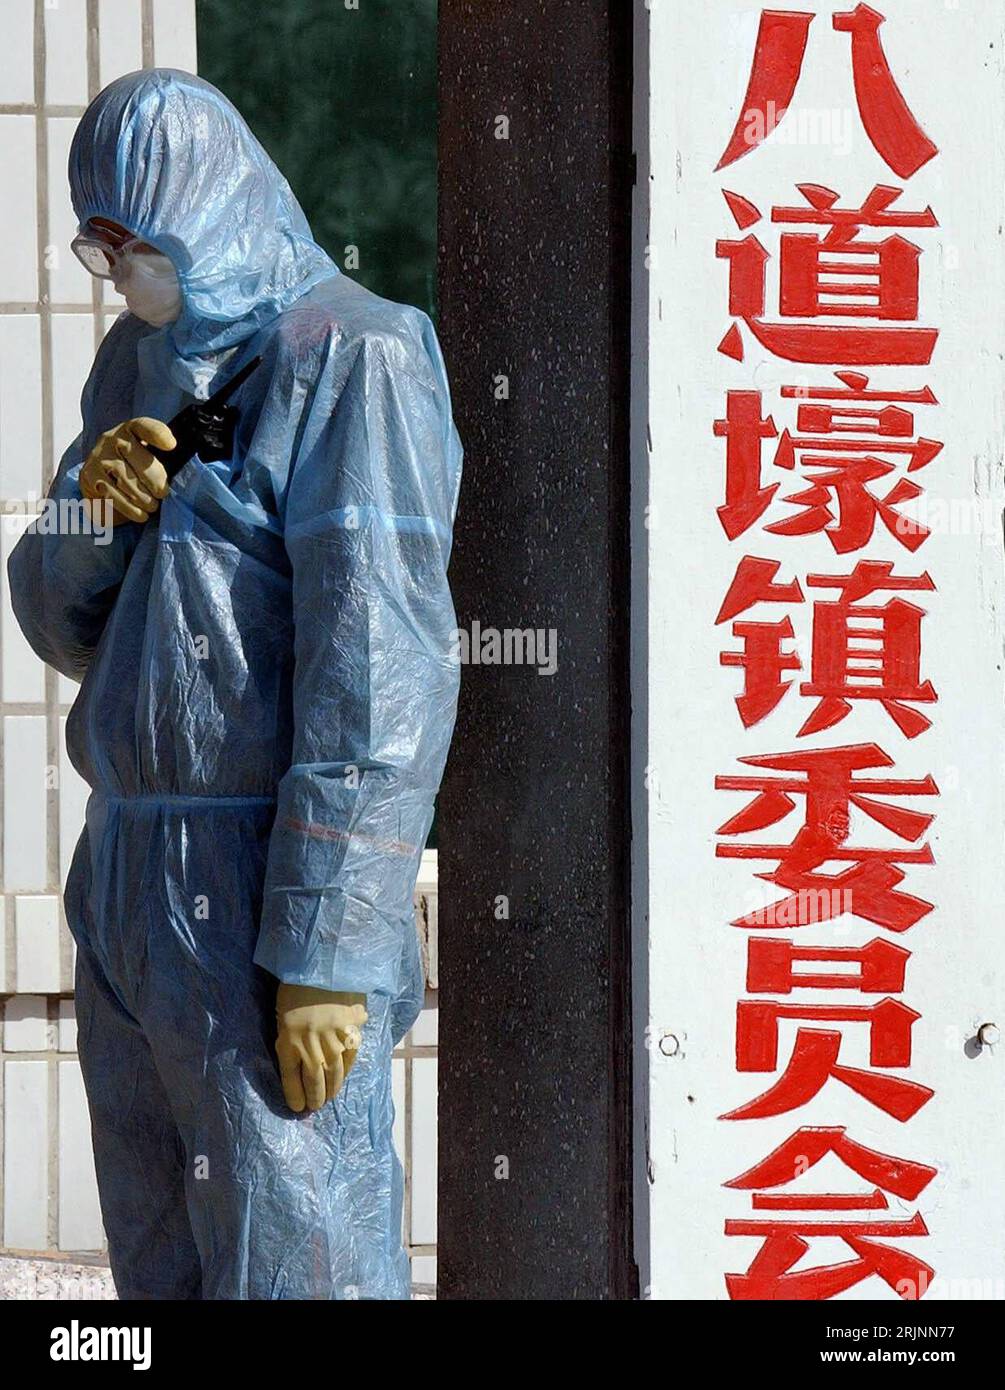 Bildnummer: 50980116 Datum: 08.11.2005 Copyright: imago/Xinhua medizinischer Mitarbeiter mit Schutzbekleidung bespricht die weitere Vorgehensweise am Funkgerät in der Gemeinde Badeaohao - Jinzhou - Schutzmaßnahmen zur Prävention gegen die Verbreitung der Vogelgrippe - PUBLICATIONxNOTxINxCHN, Personen; 2005, Jinzhou, Liaoning, Vogelgrippe, Seuche, Seuchen, Epidemie, Epidemien, Vogel-Grippe, Seuchengefahr, Schutzmaßnahmen, Vogelseuche, Vogelseuchen, Vogelkrankheit, Vogelkrankheiten, Vorbeugung, Vorsorge, Prävention, Infektionskrankheit, Infektionskrankheiten, Schutzanzug, Schu Stockfoto